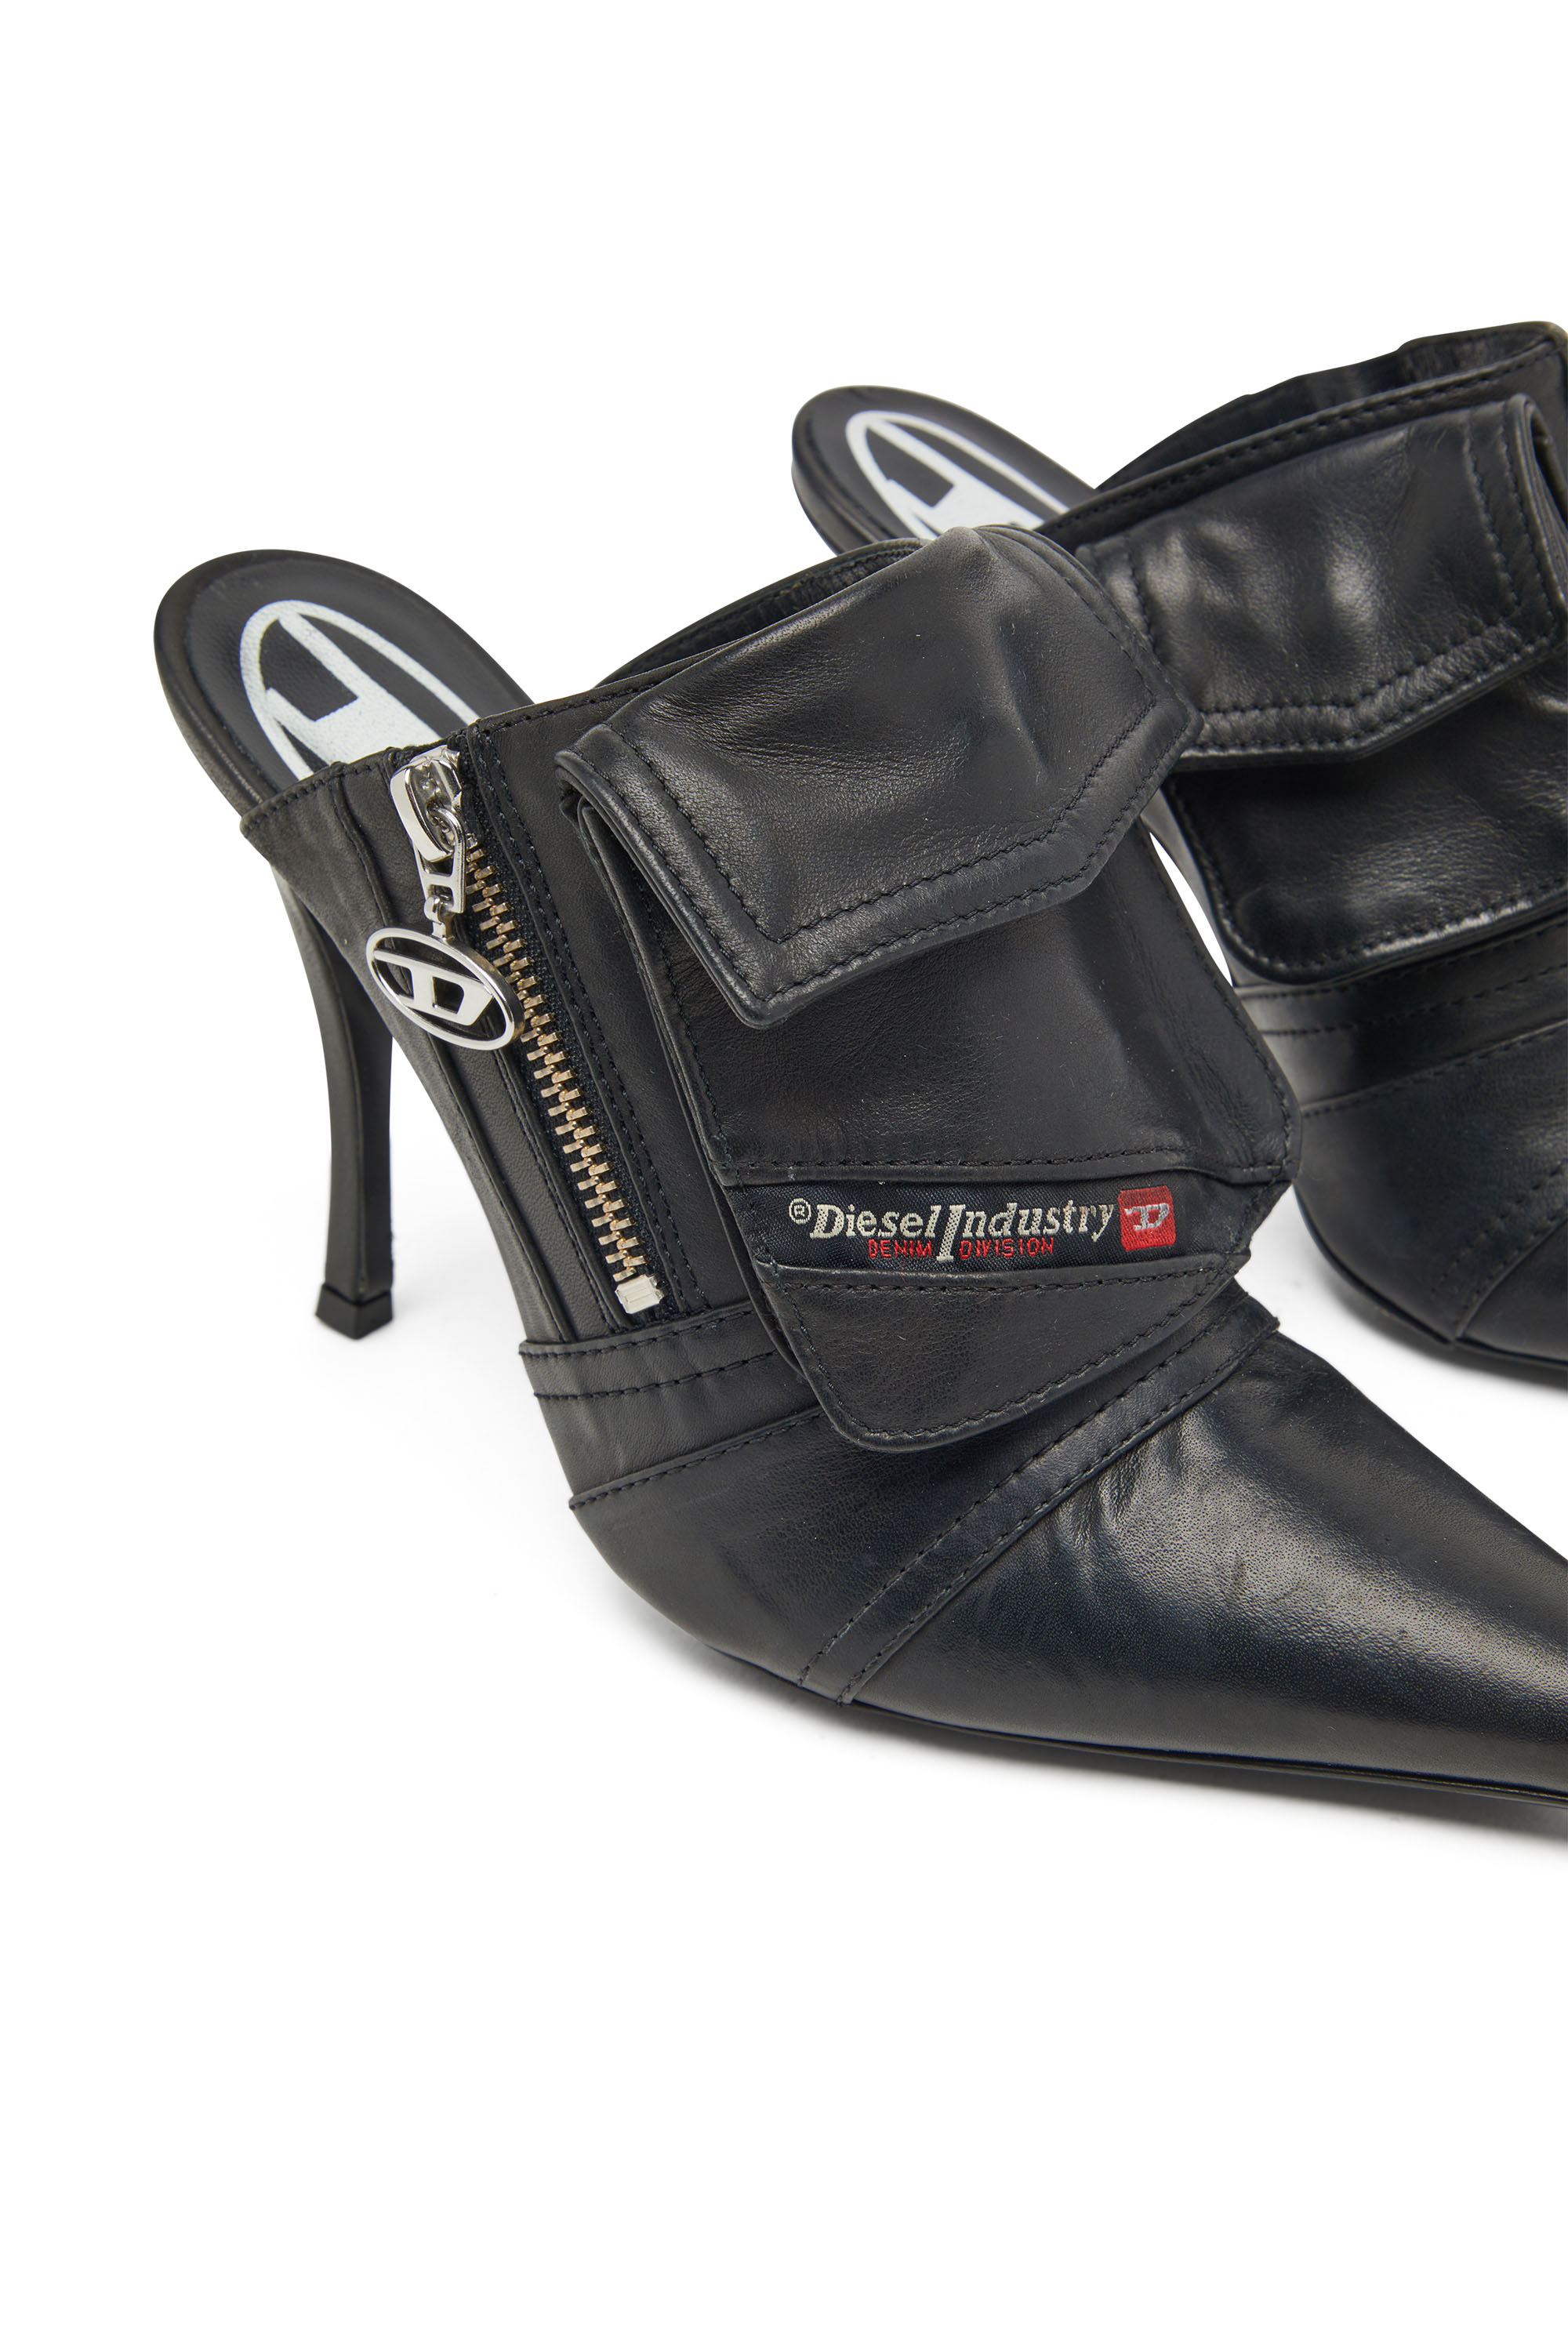 Diesel - D-VENUS POCKET ML, Damen D-Venus Pocket Ml Shoes - Stiefeletten mit Utility-Taschen in Schwarz - Image 4